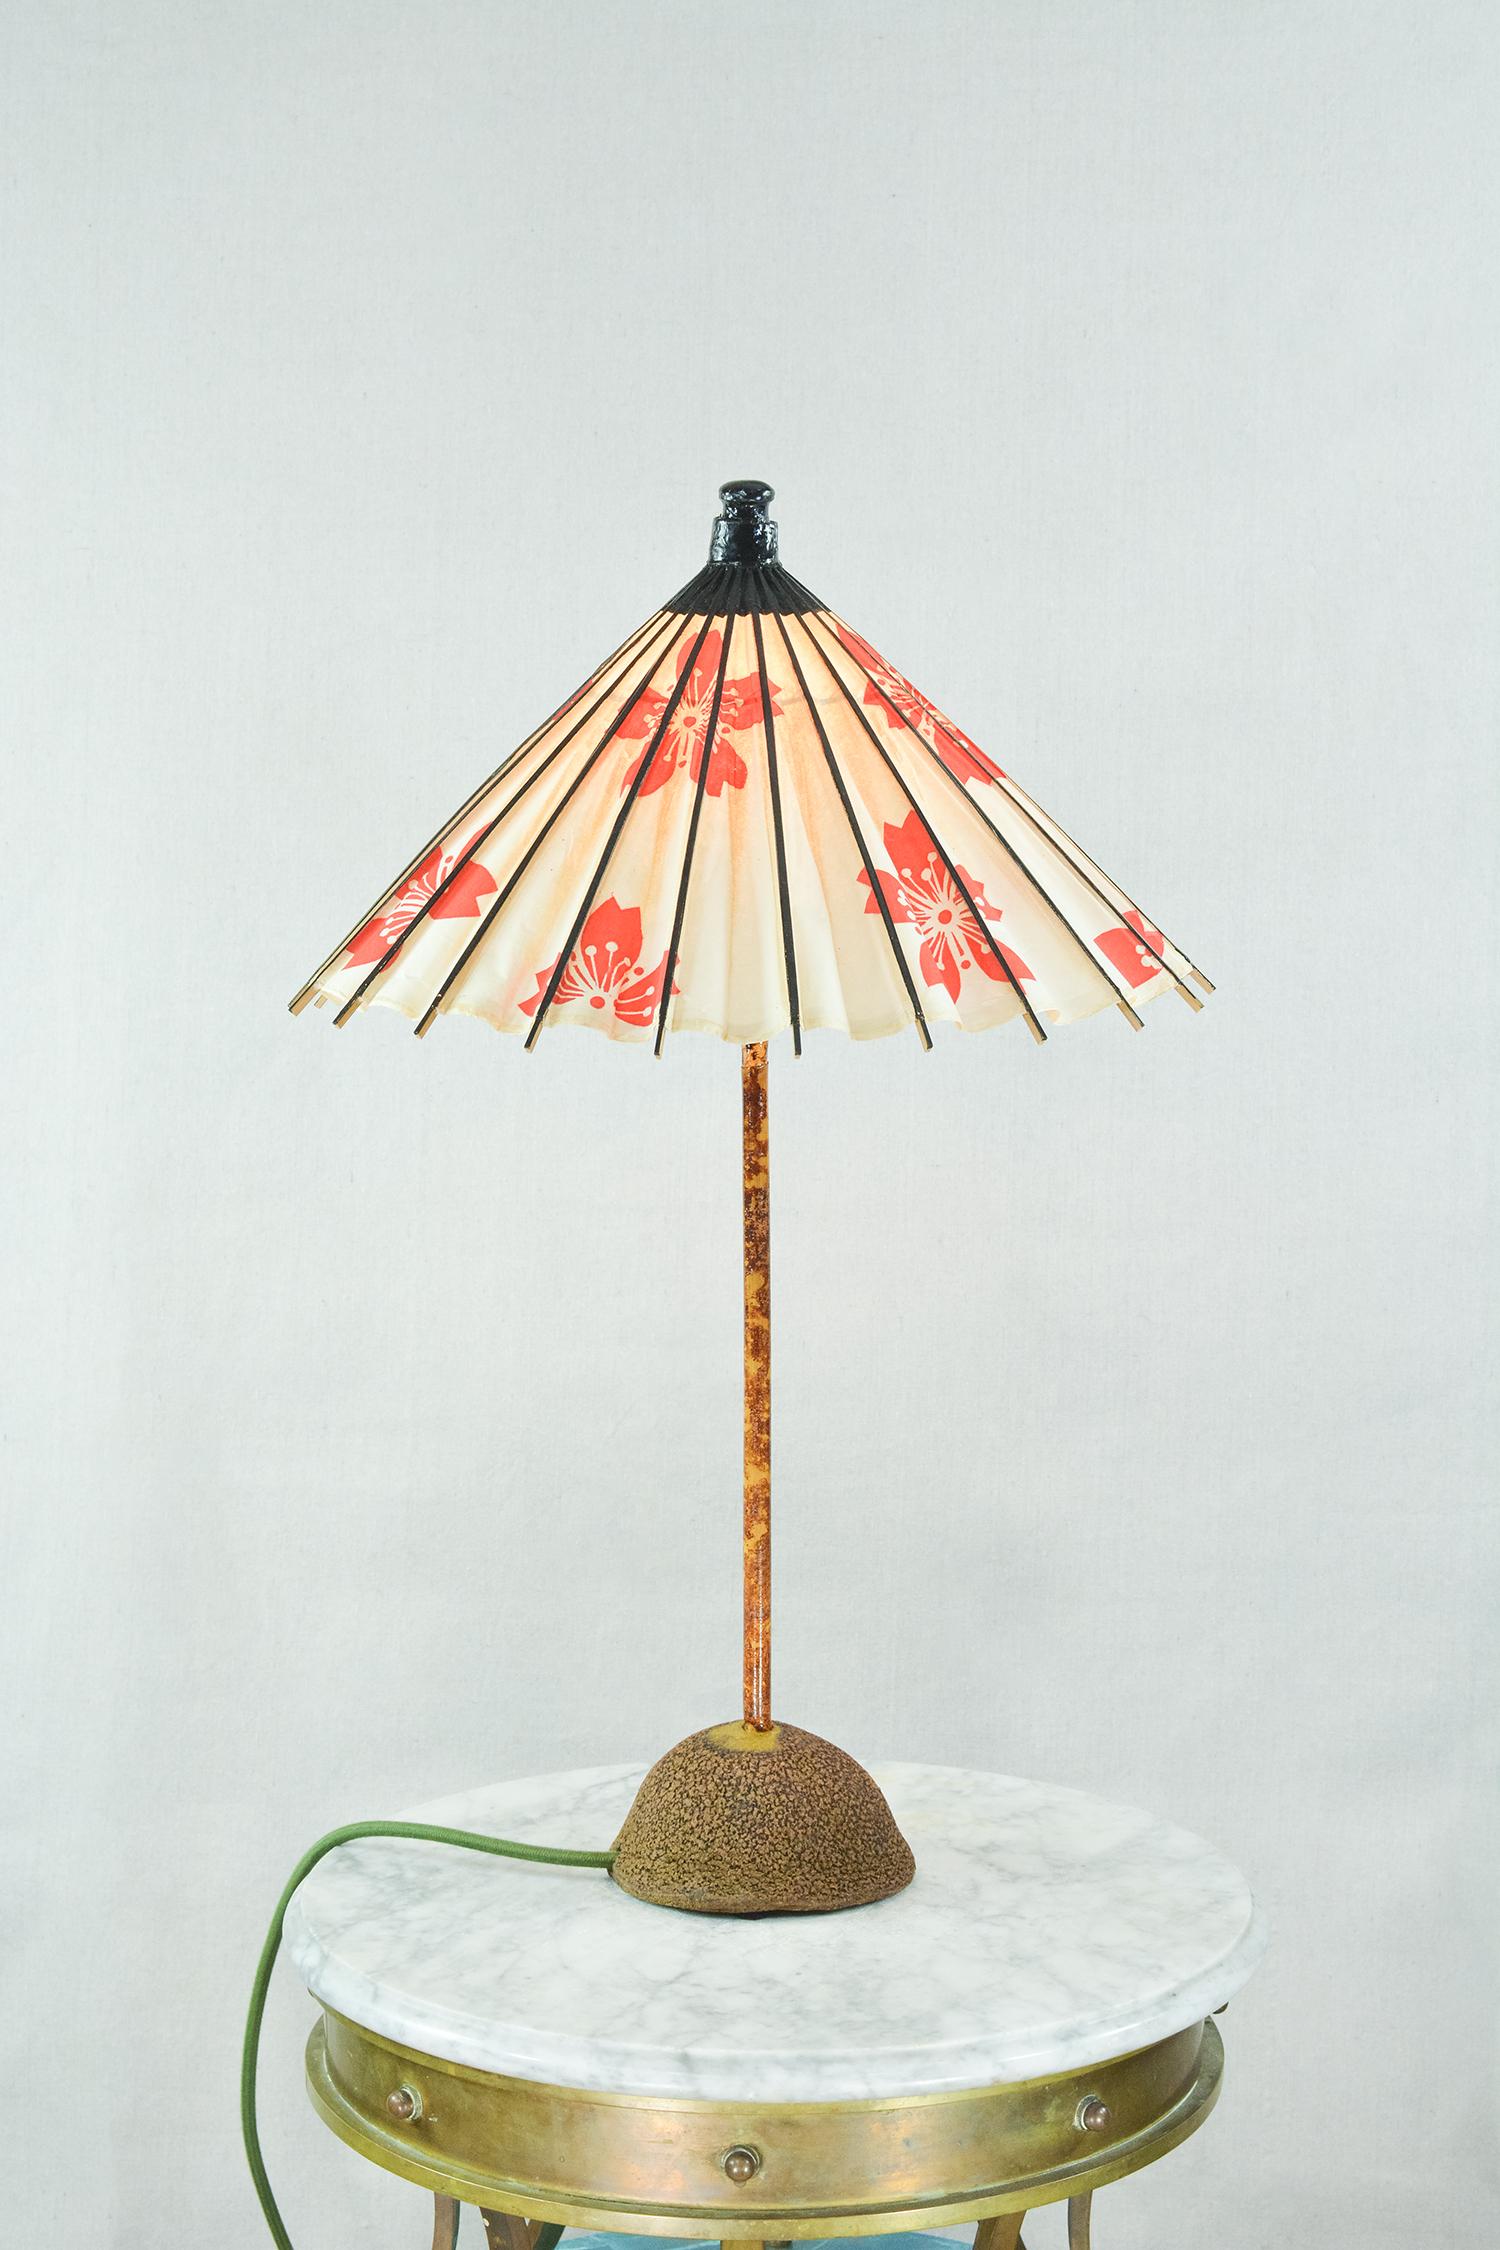 La Collection One of One est une série en cours de lampes de table et de lampadaires en édition unique dont les abat-jours sont fabriqués à partir de parasols en papier vintage particulièrement rares provenant de nos archives. 

Soyez assuré que